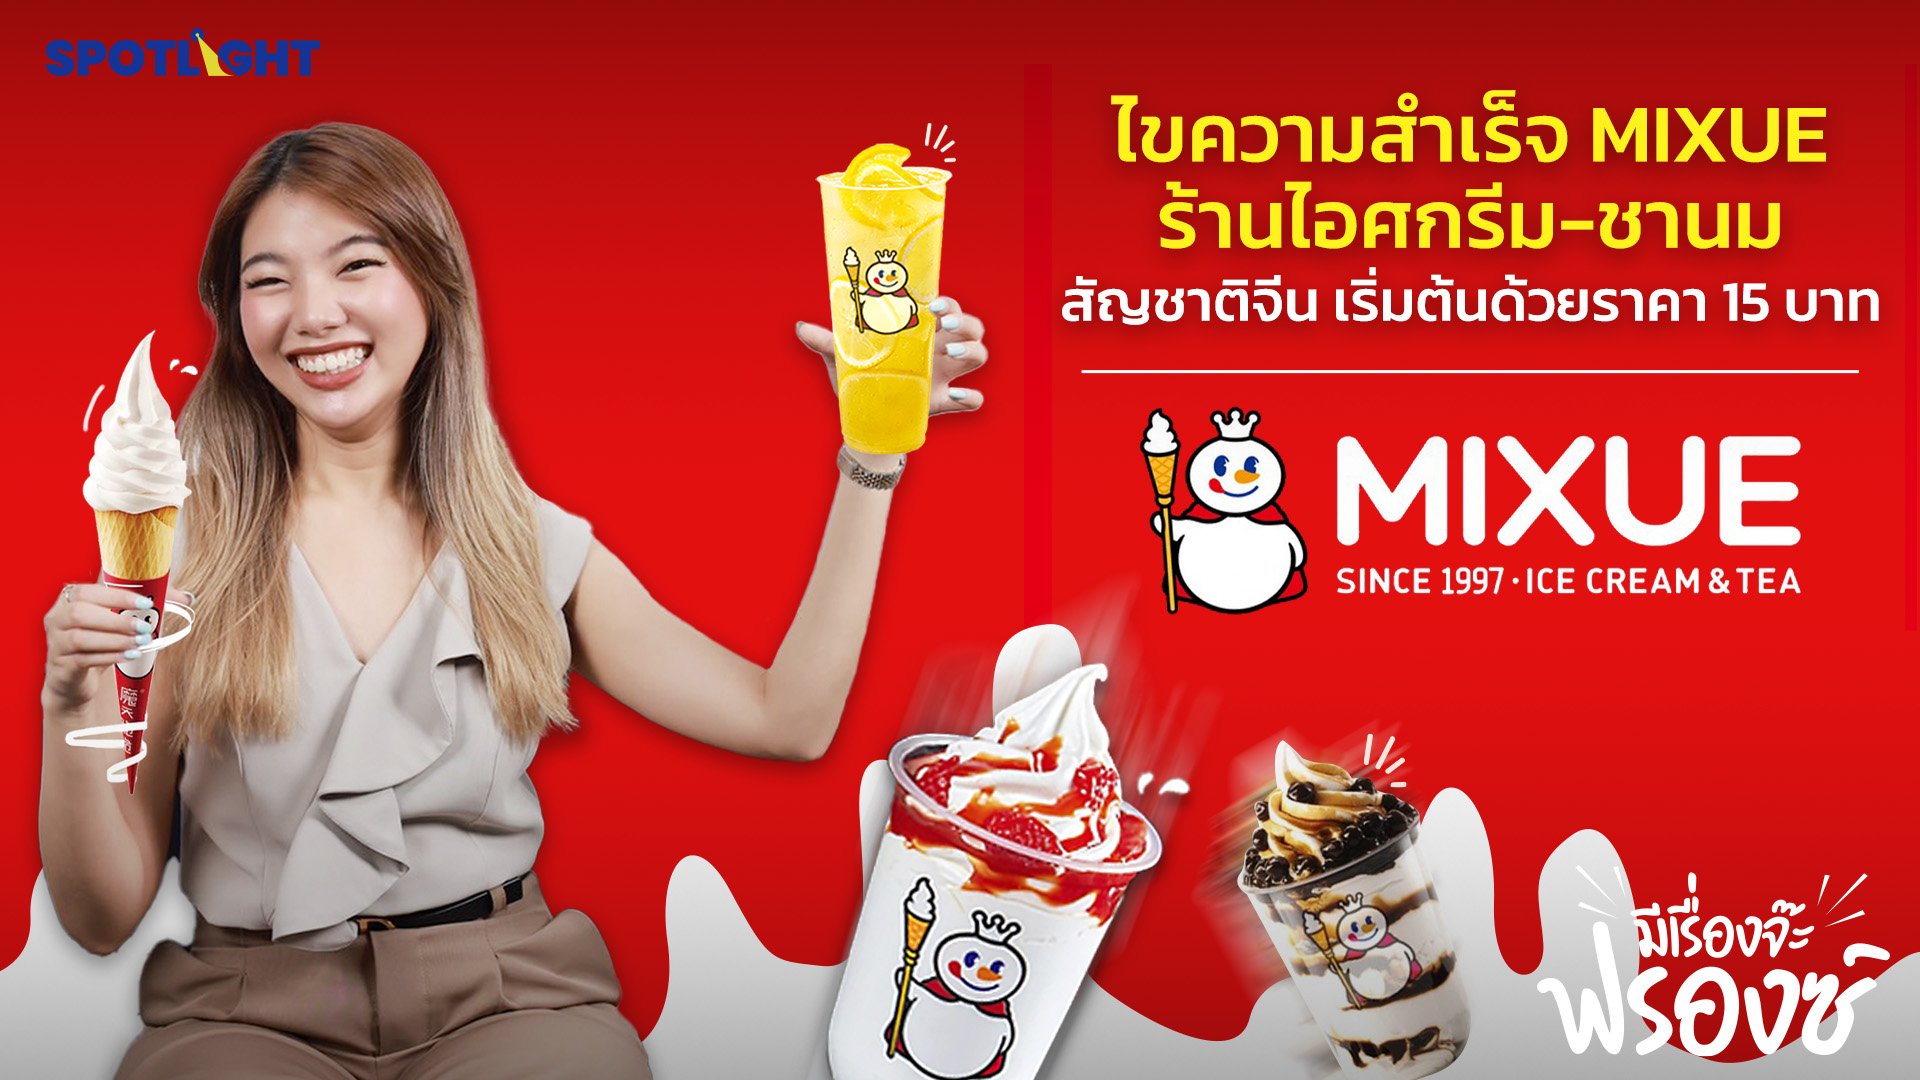 ไขความสำเร็จ MIXUE ร้านไอศกรีม-ชานม สัญชาติจีน เริ่มต้นด้วยราคา 15 บาท | Spotlight | 30 ม.ค. 67 | AMARIN TVHD34